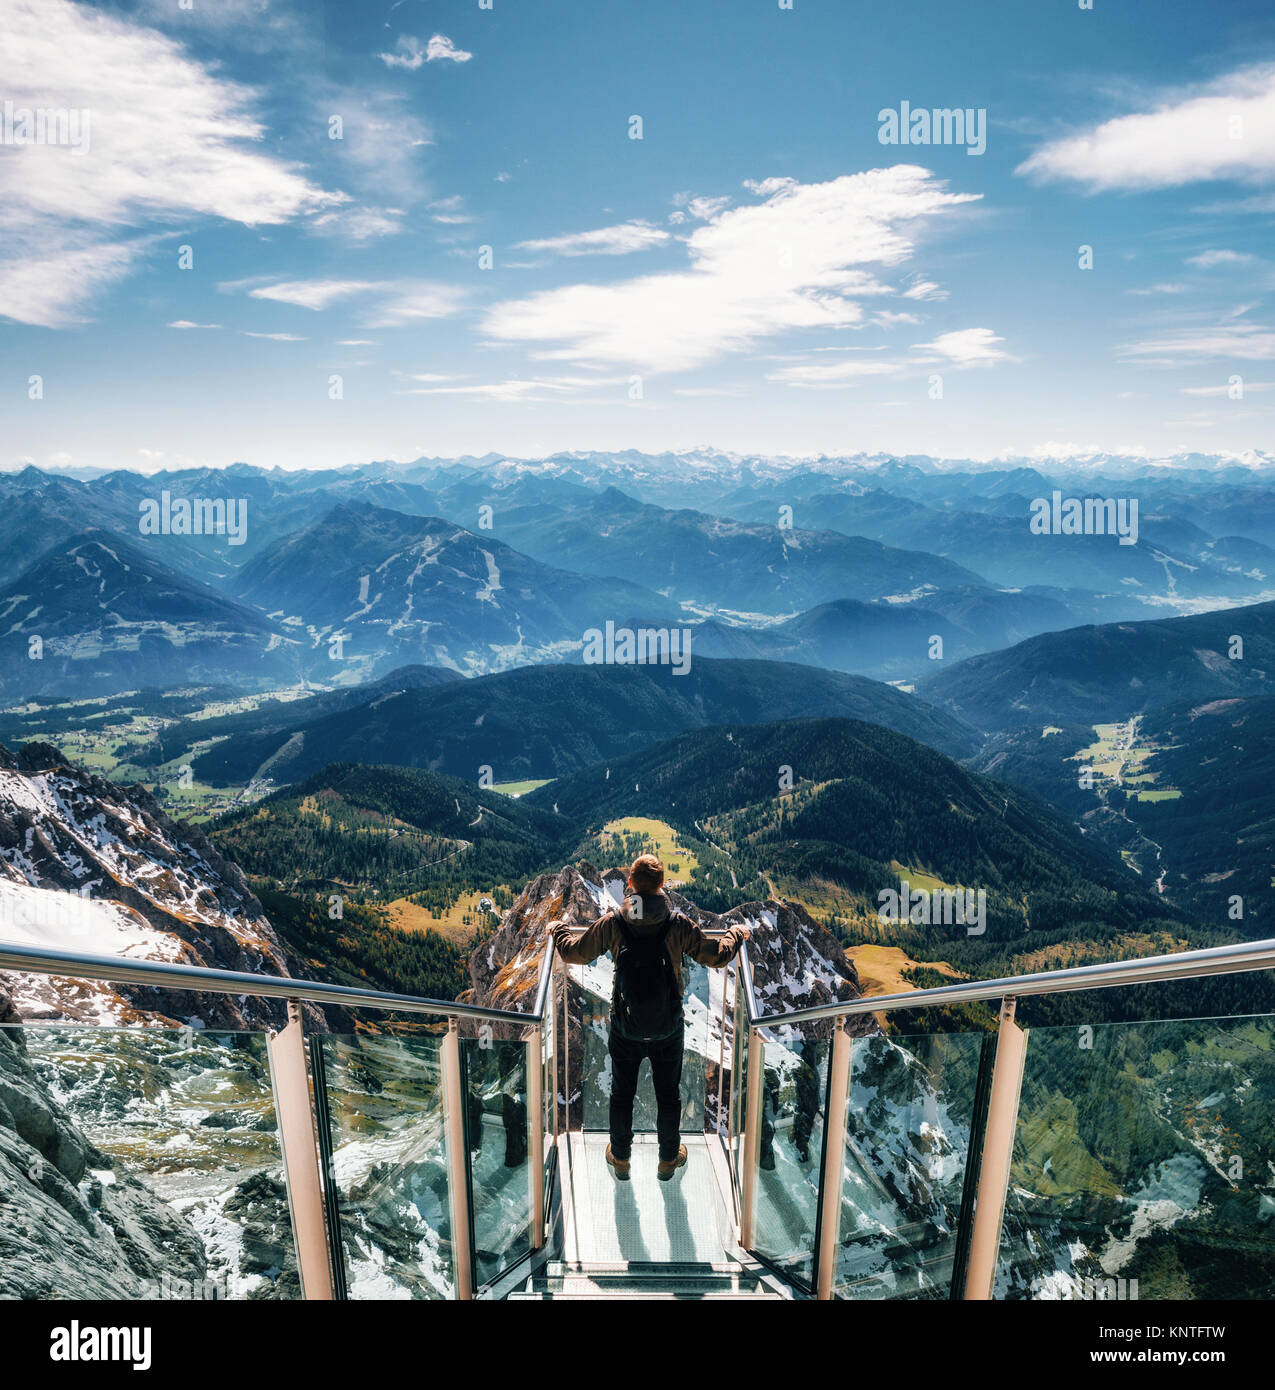 Giovane uomo con zaino sorge sulla piattaforma di osservazione di skywalk ponte di corde monti Dachstein e gode del paesaggio in Austria Foto Stock